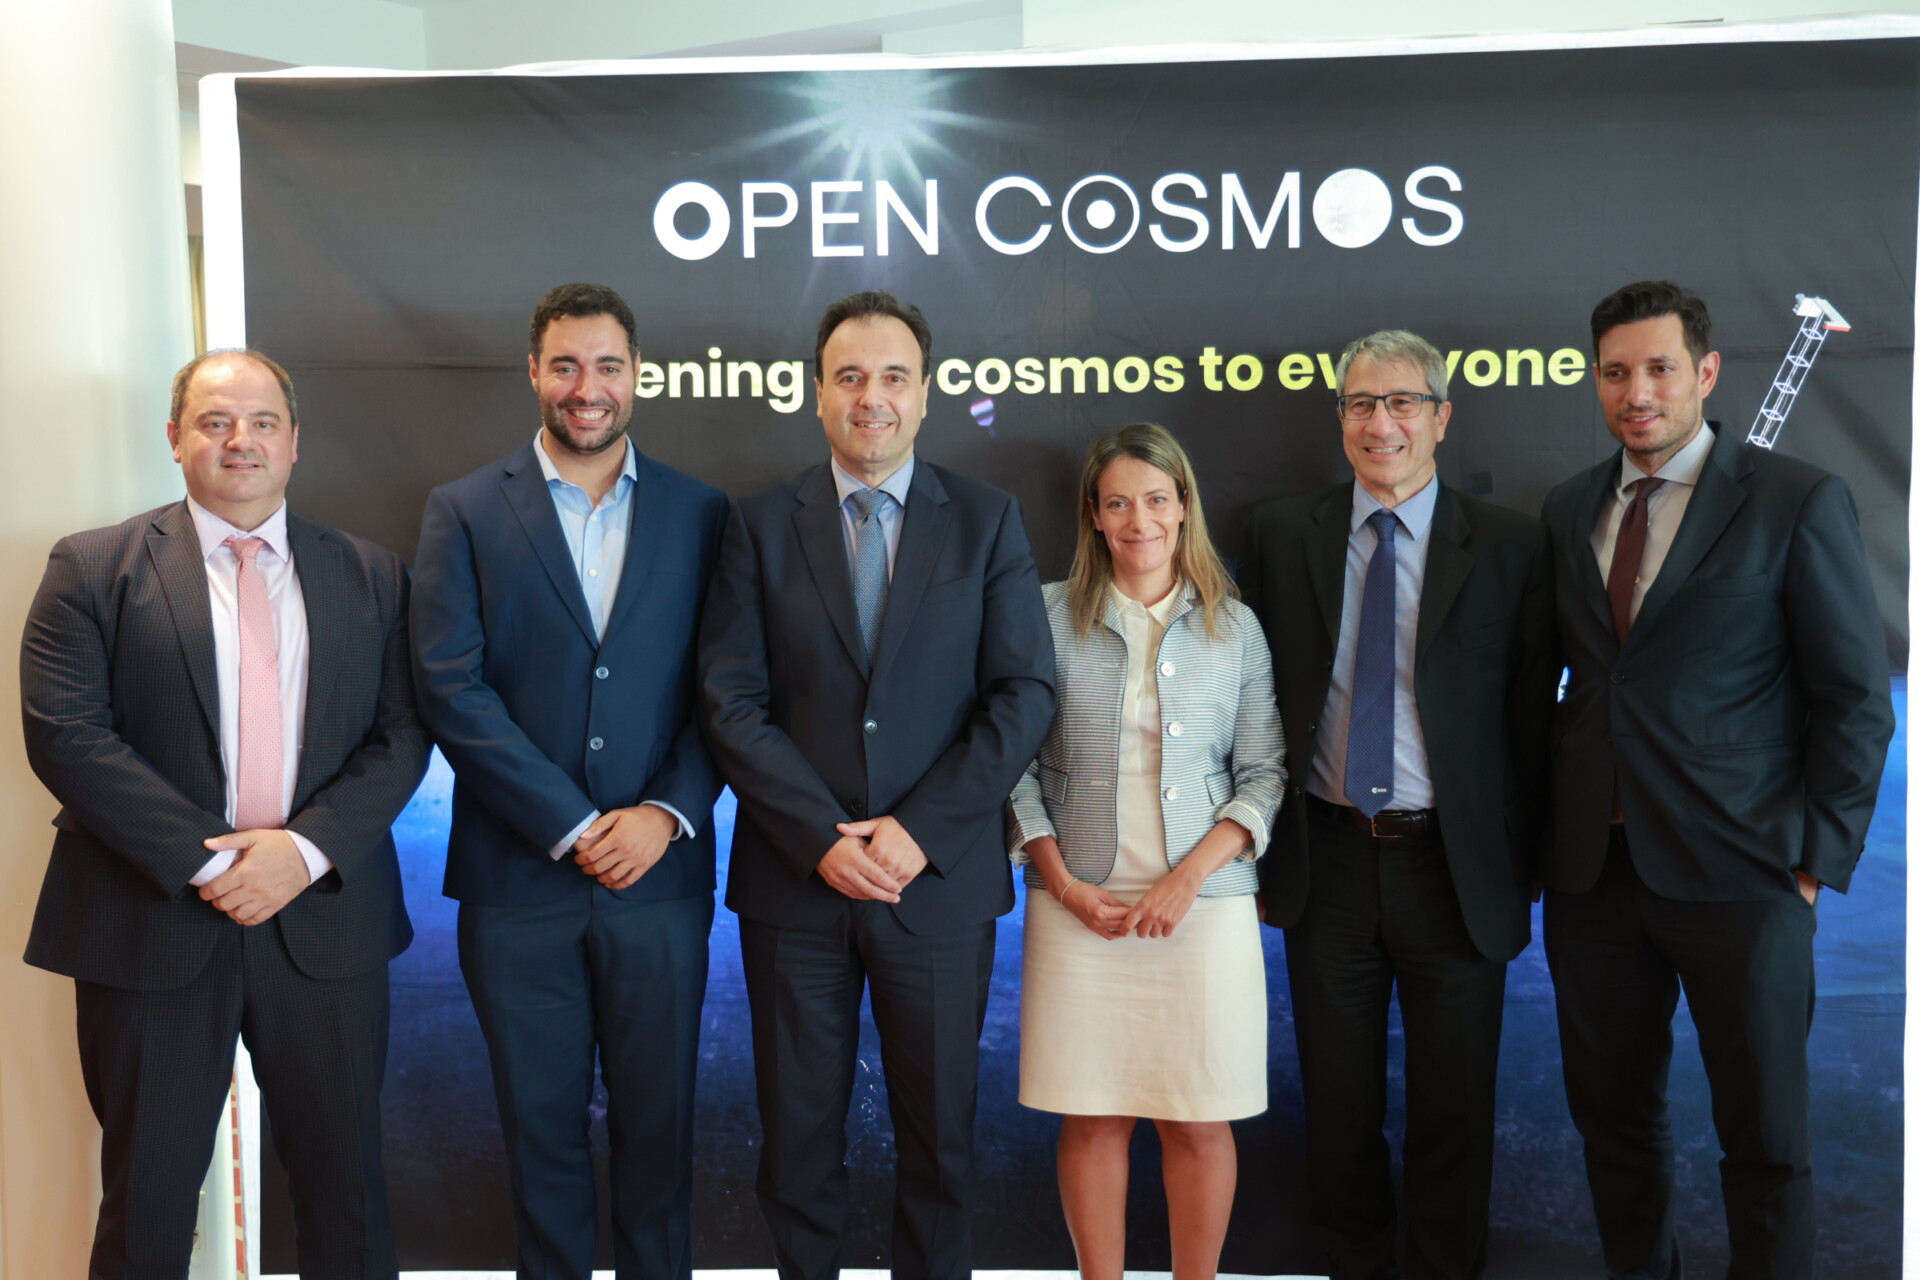 Η συμφωνία για την κατασκευή και την εκτόξευση του σμήνους Μικροδορυφόρων υπεγράφη σήμερα, 2 Ιουλίου, μεταξύ του Ευρωπαϊκού Οργανισμού Διαστήματος (ESA) και της εταιρείας Open Cosmos, παρουσία του υπουργού Ψηφιακής Διακυβέρνησης, Δημήτρη Παπαστεργίου, του υφυπουργού, Κωνσταντίνου Κυρανάκη και του Γενικού Γραμματέα Τηλεπικοινωνιών και Ταχυδρομείων Κωνσταντίνου Καράντζαλου © Υπουργείο Ψηφιακής Διακυβέρνησης 